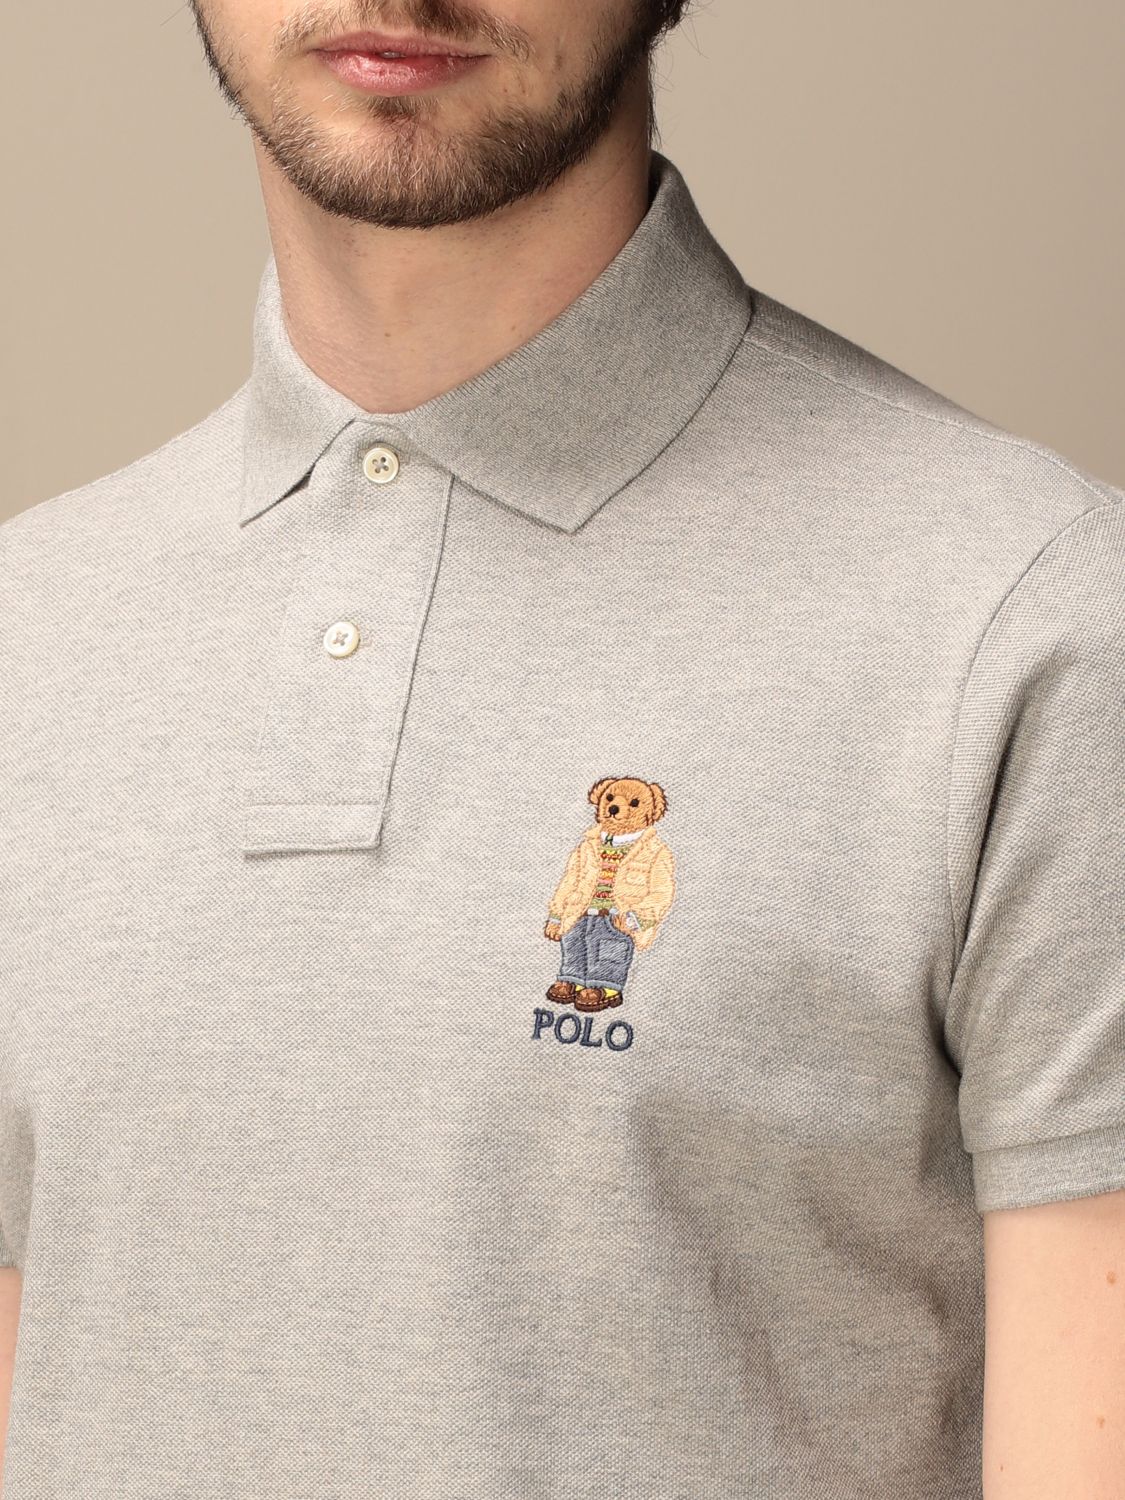 polo shirt with teddy bear